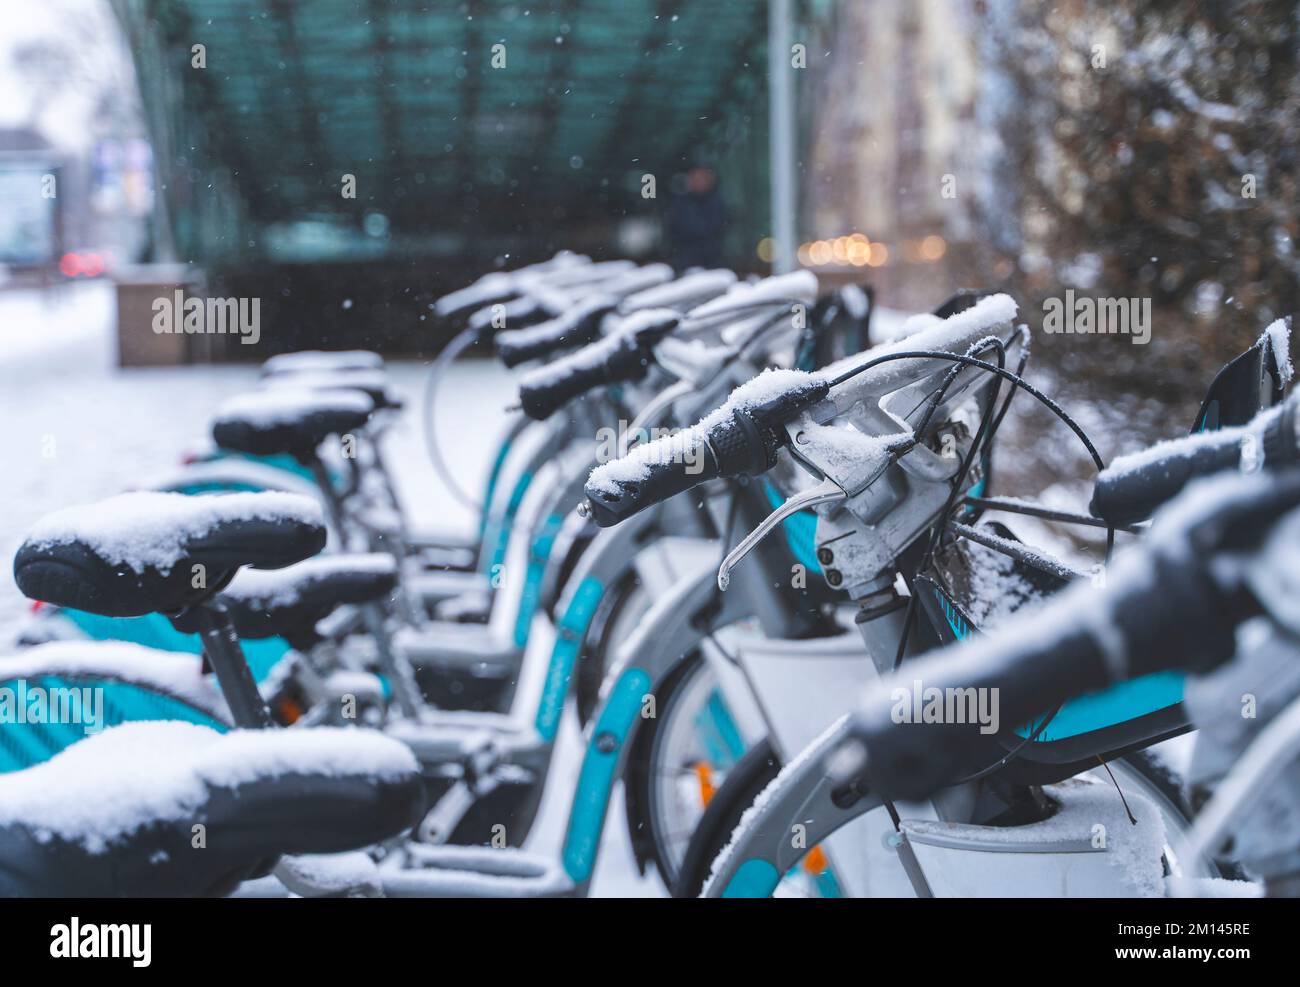 Location de vélos de ville à la station d'accueil couverte de neige Banque D'Images